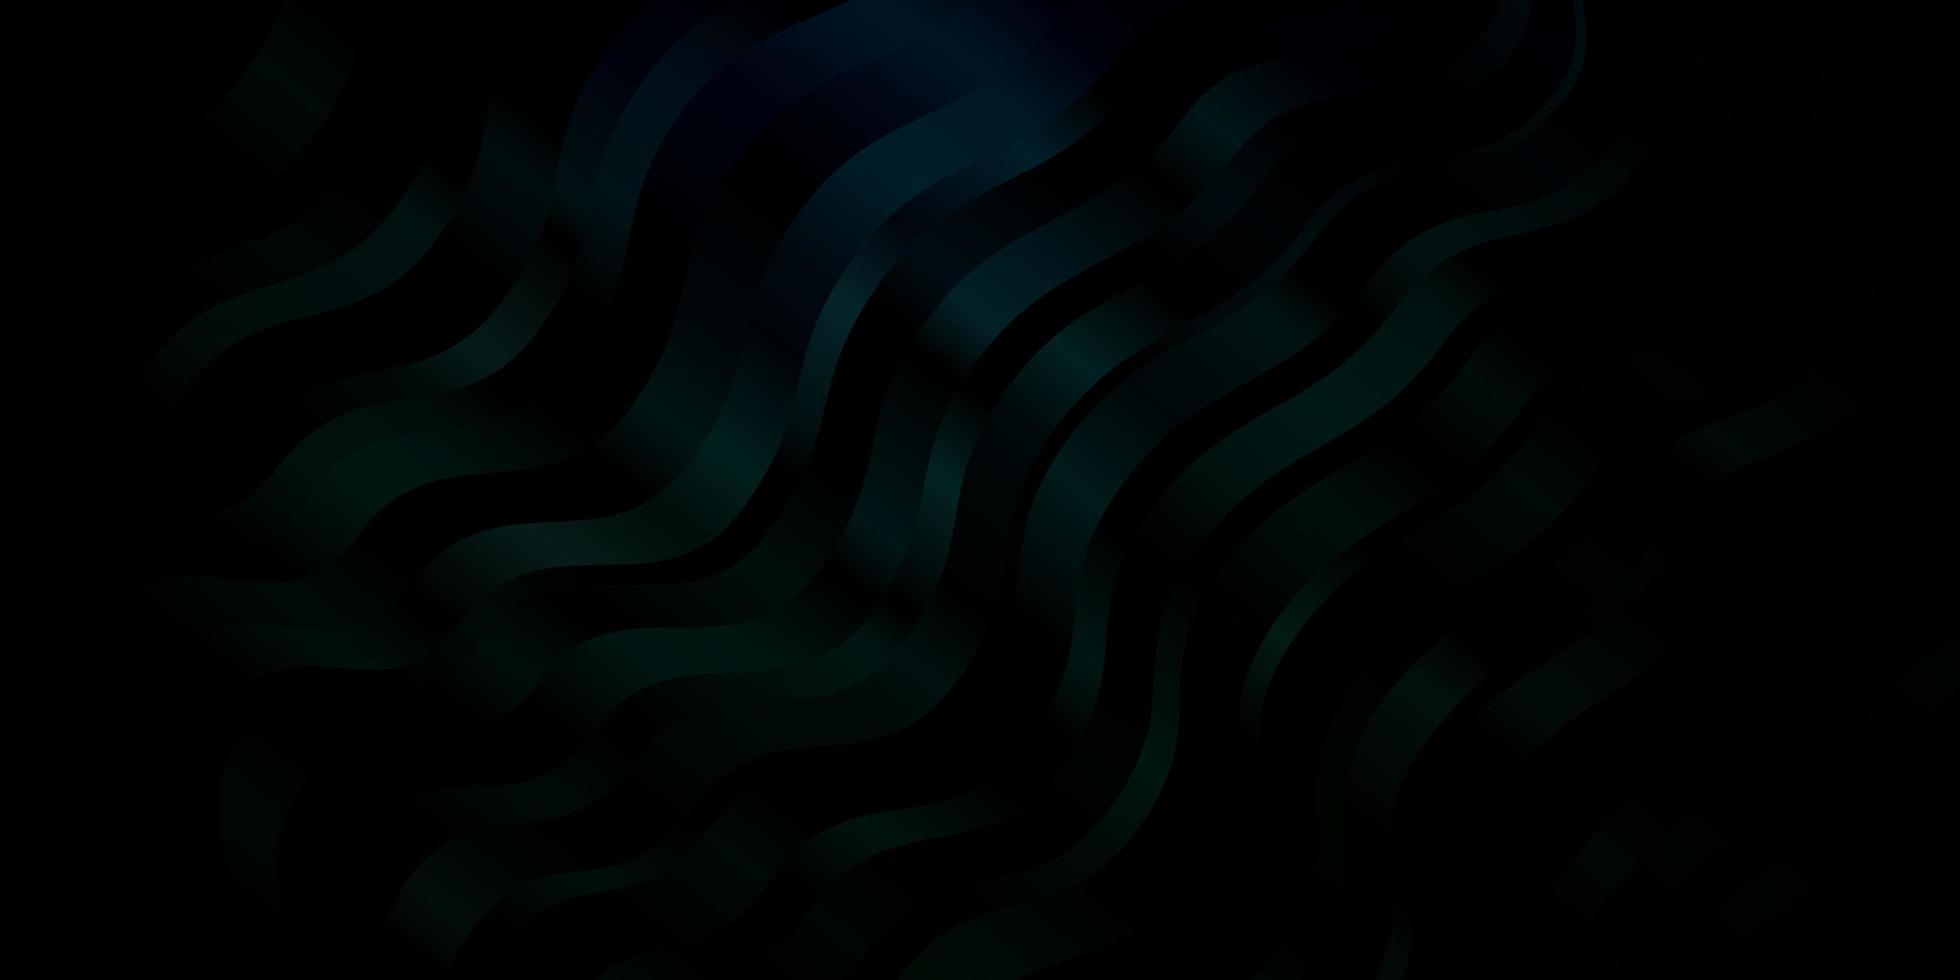 textura de vector verde oscuro con líneas torcidas ilustración abstracta con patrón de líneas de degradado bandy para páginas de destino de sitios web